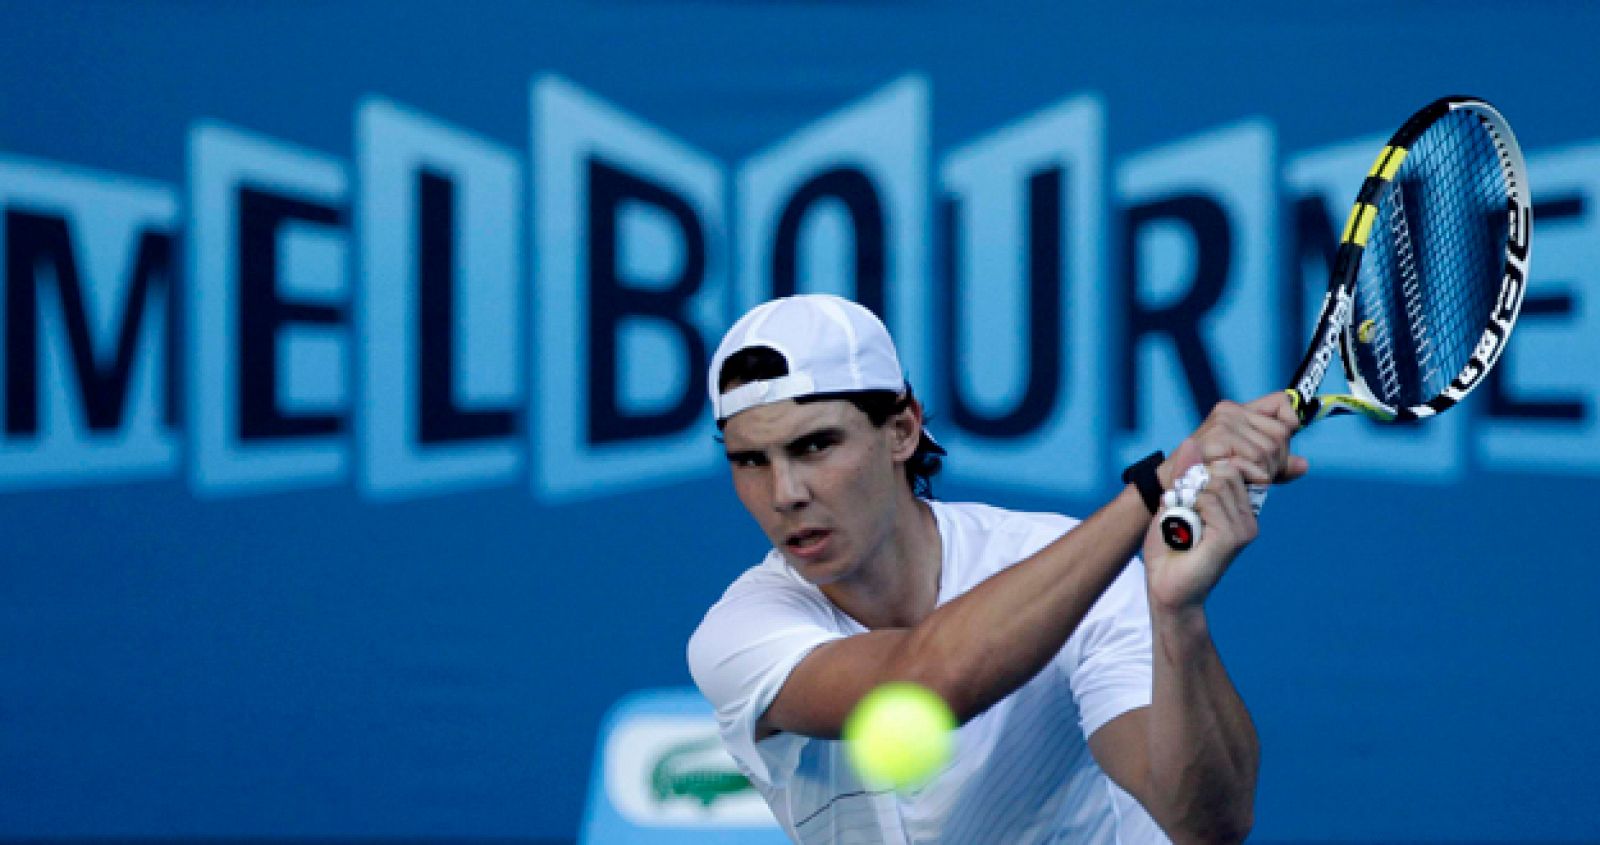 El tenista español Rafael Nadal, número uno del mundo, entrena en la pista central del complejo Melbourne Park.